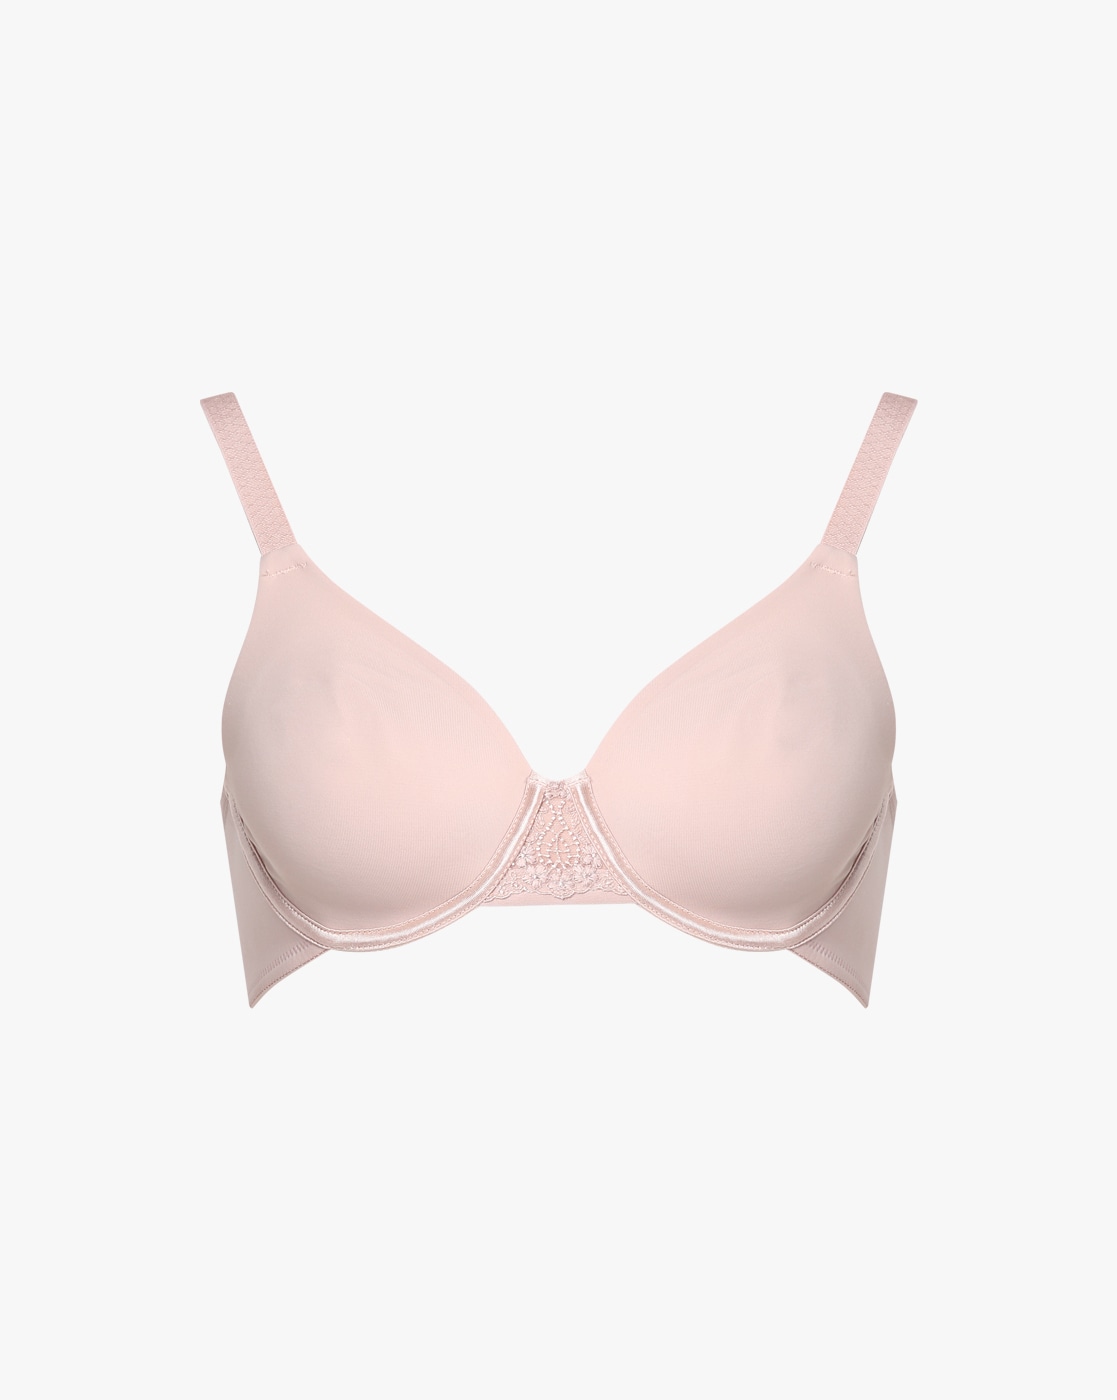 Buy Nude Bras for Women by Enamor Online